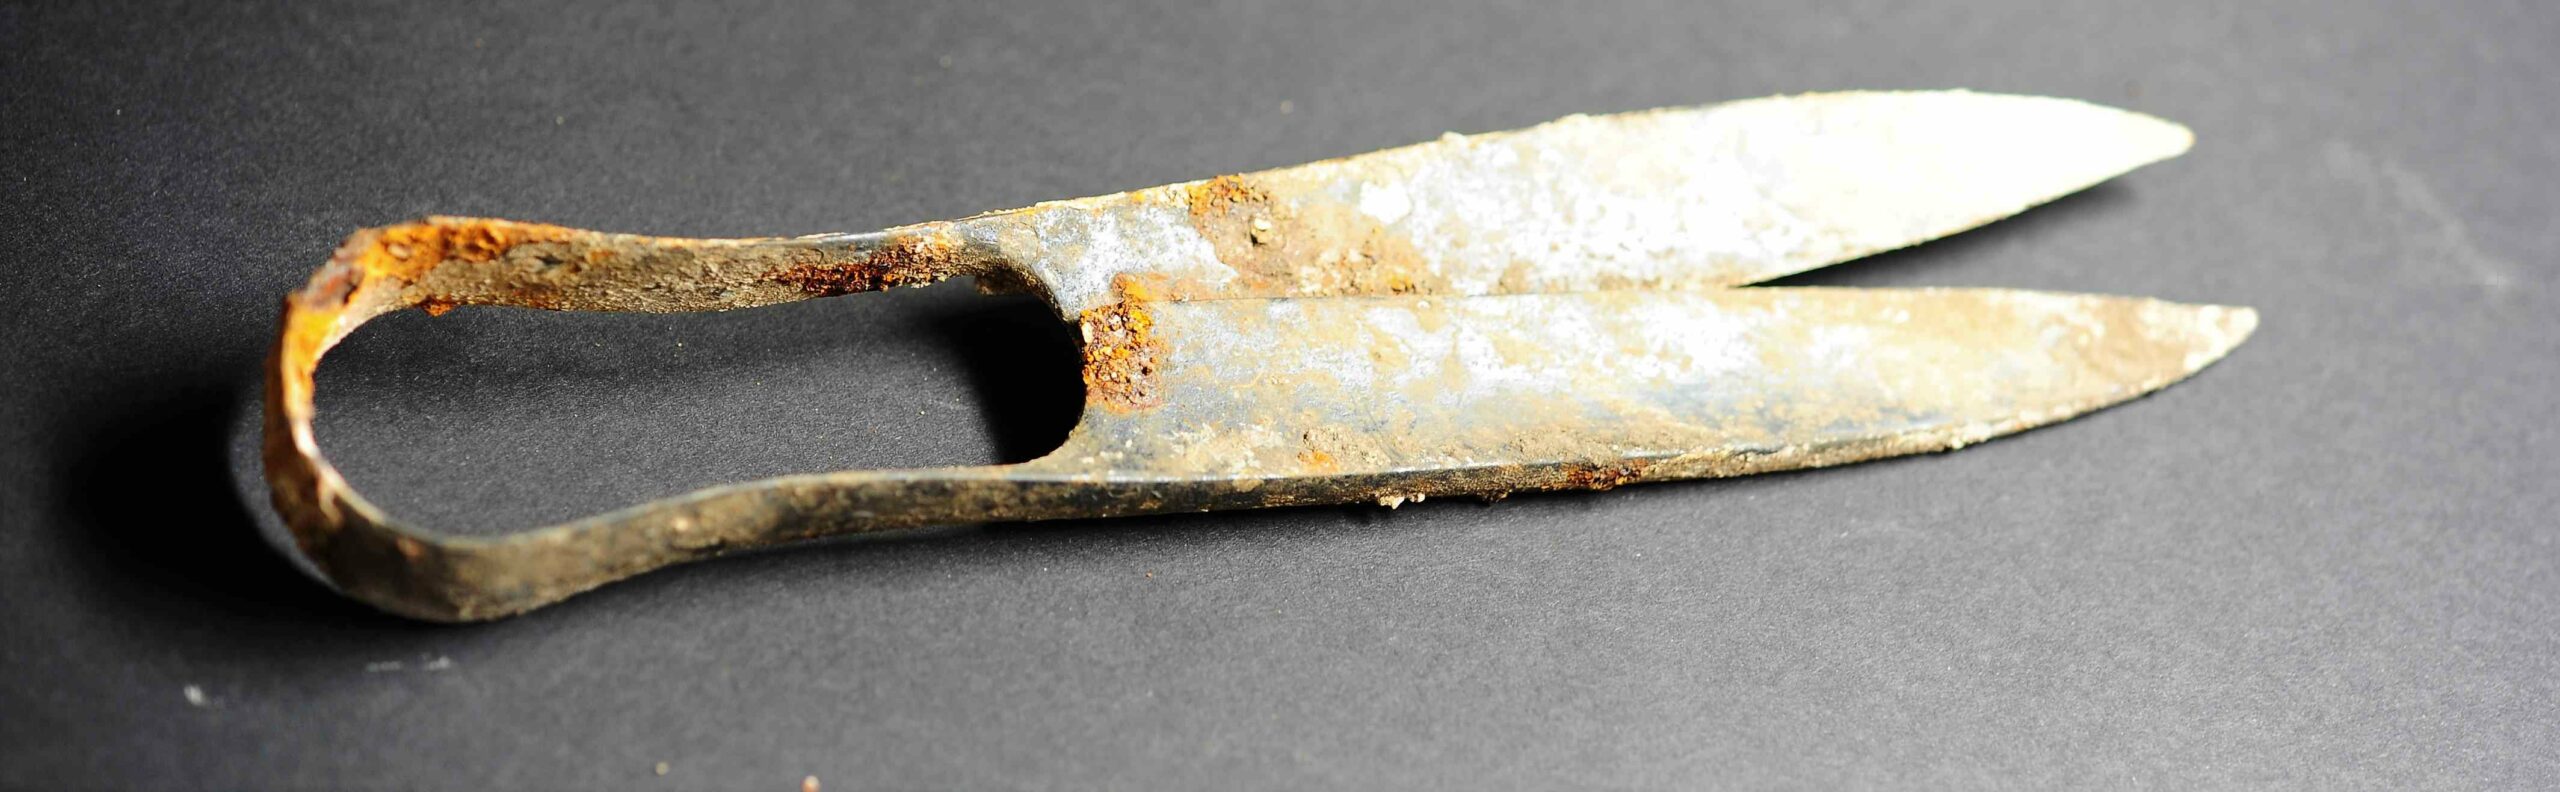 Foarfece vechi de 2,300 de ani și o sabie „îndoită” descoperite într-un mormânt celtic de incinerare din Germania 2